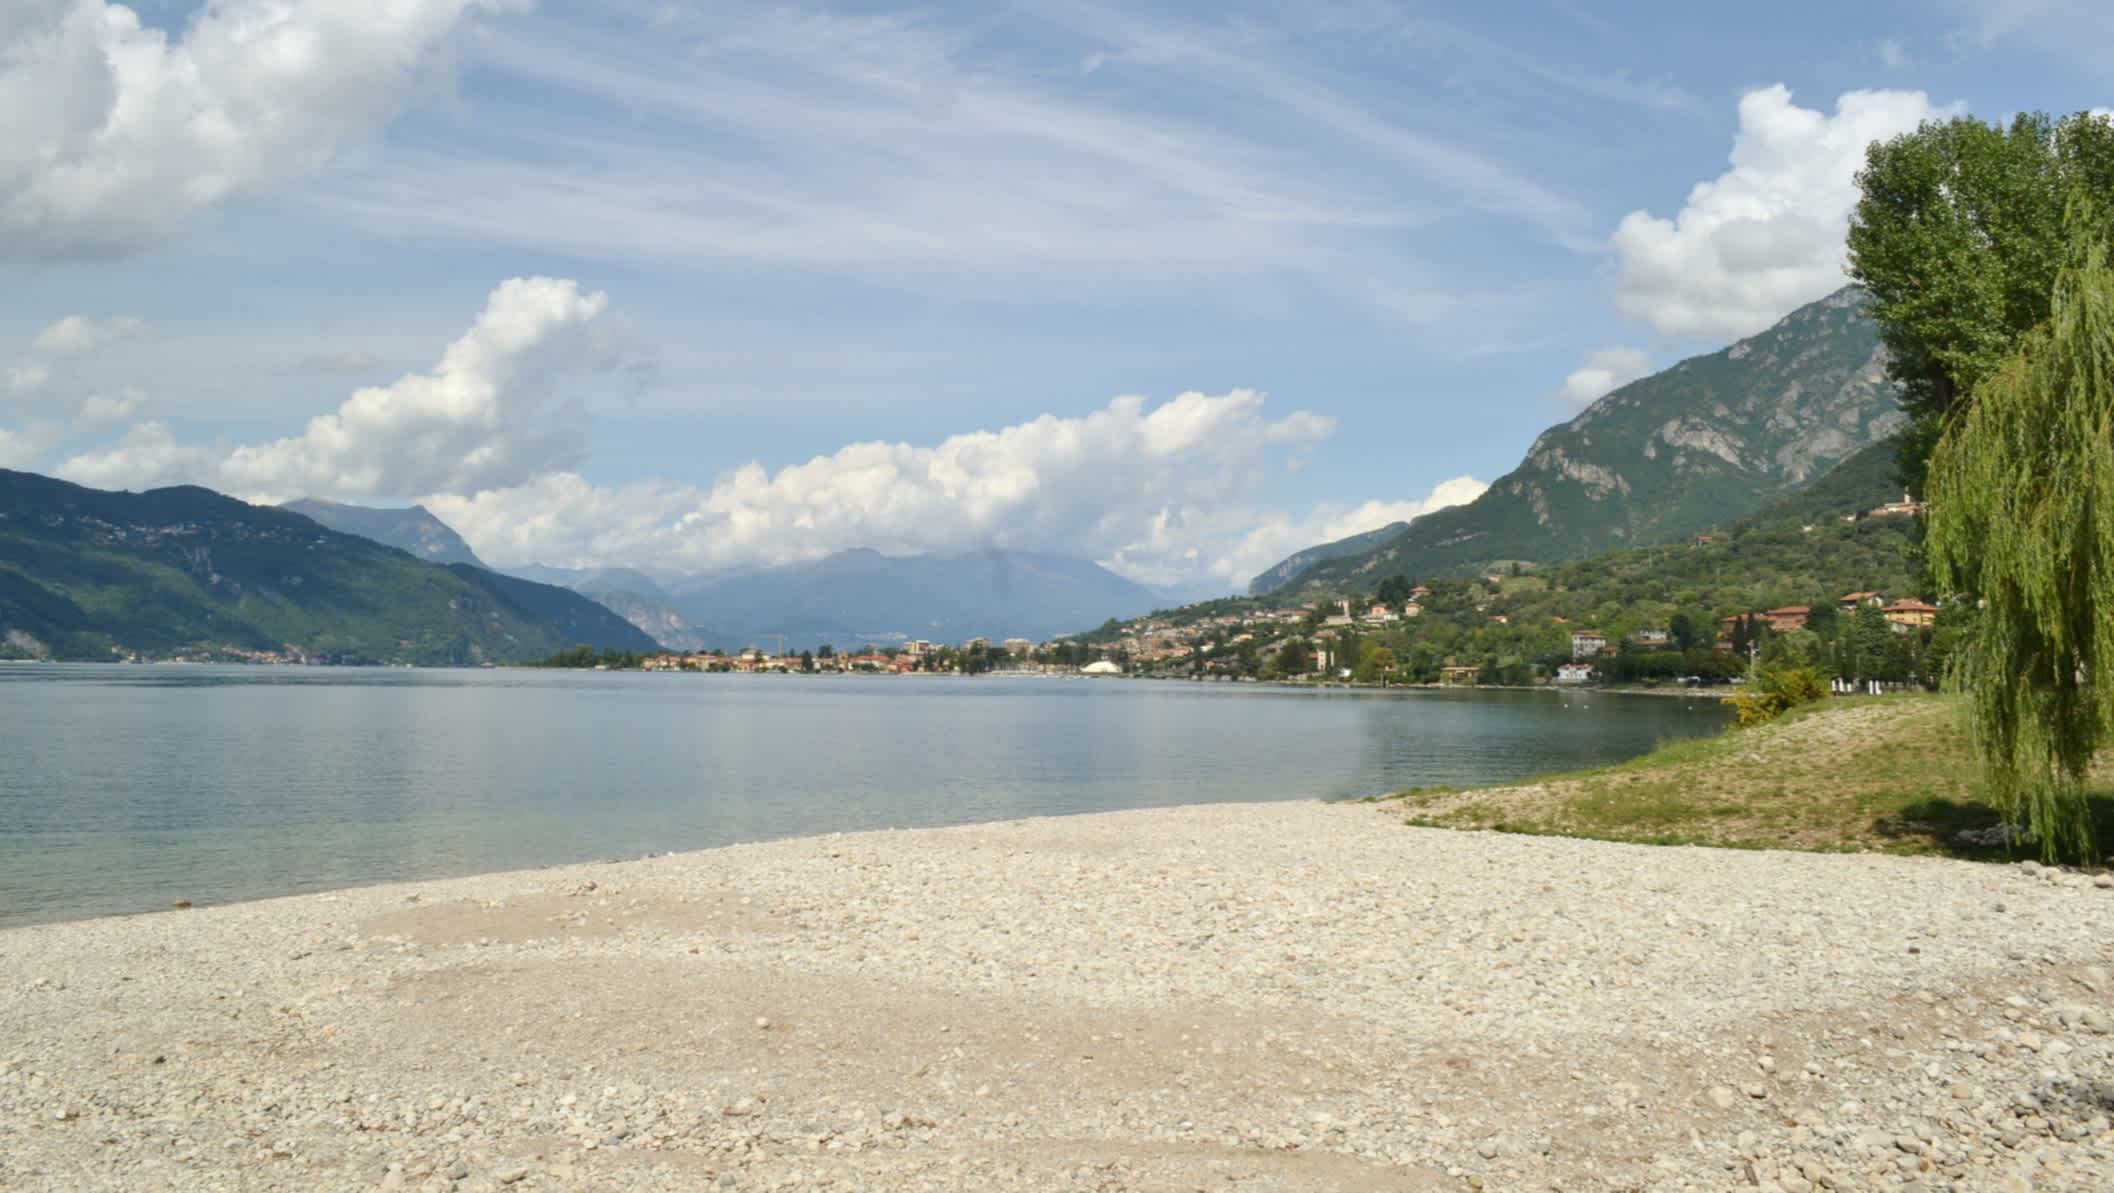 Plage de galets d'Abbadia Lariana sur le lac de Côme, en Lombardie, en Italie.